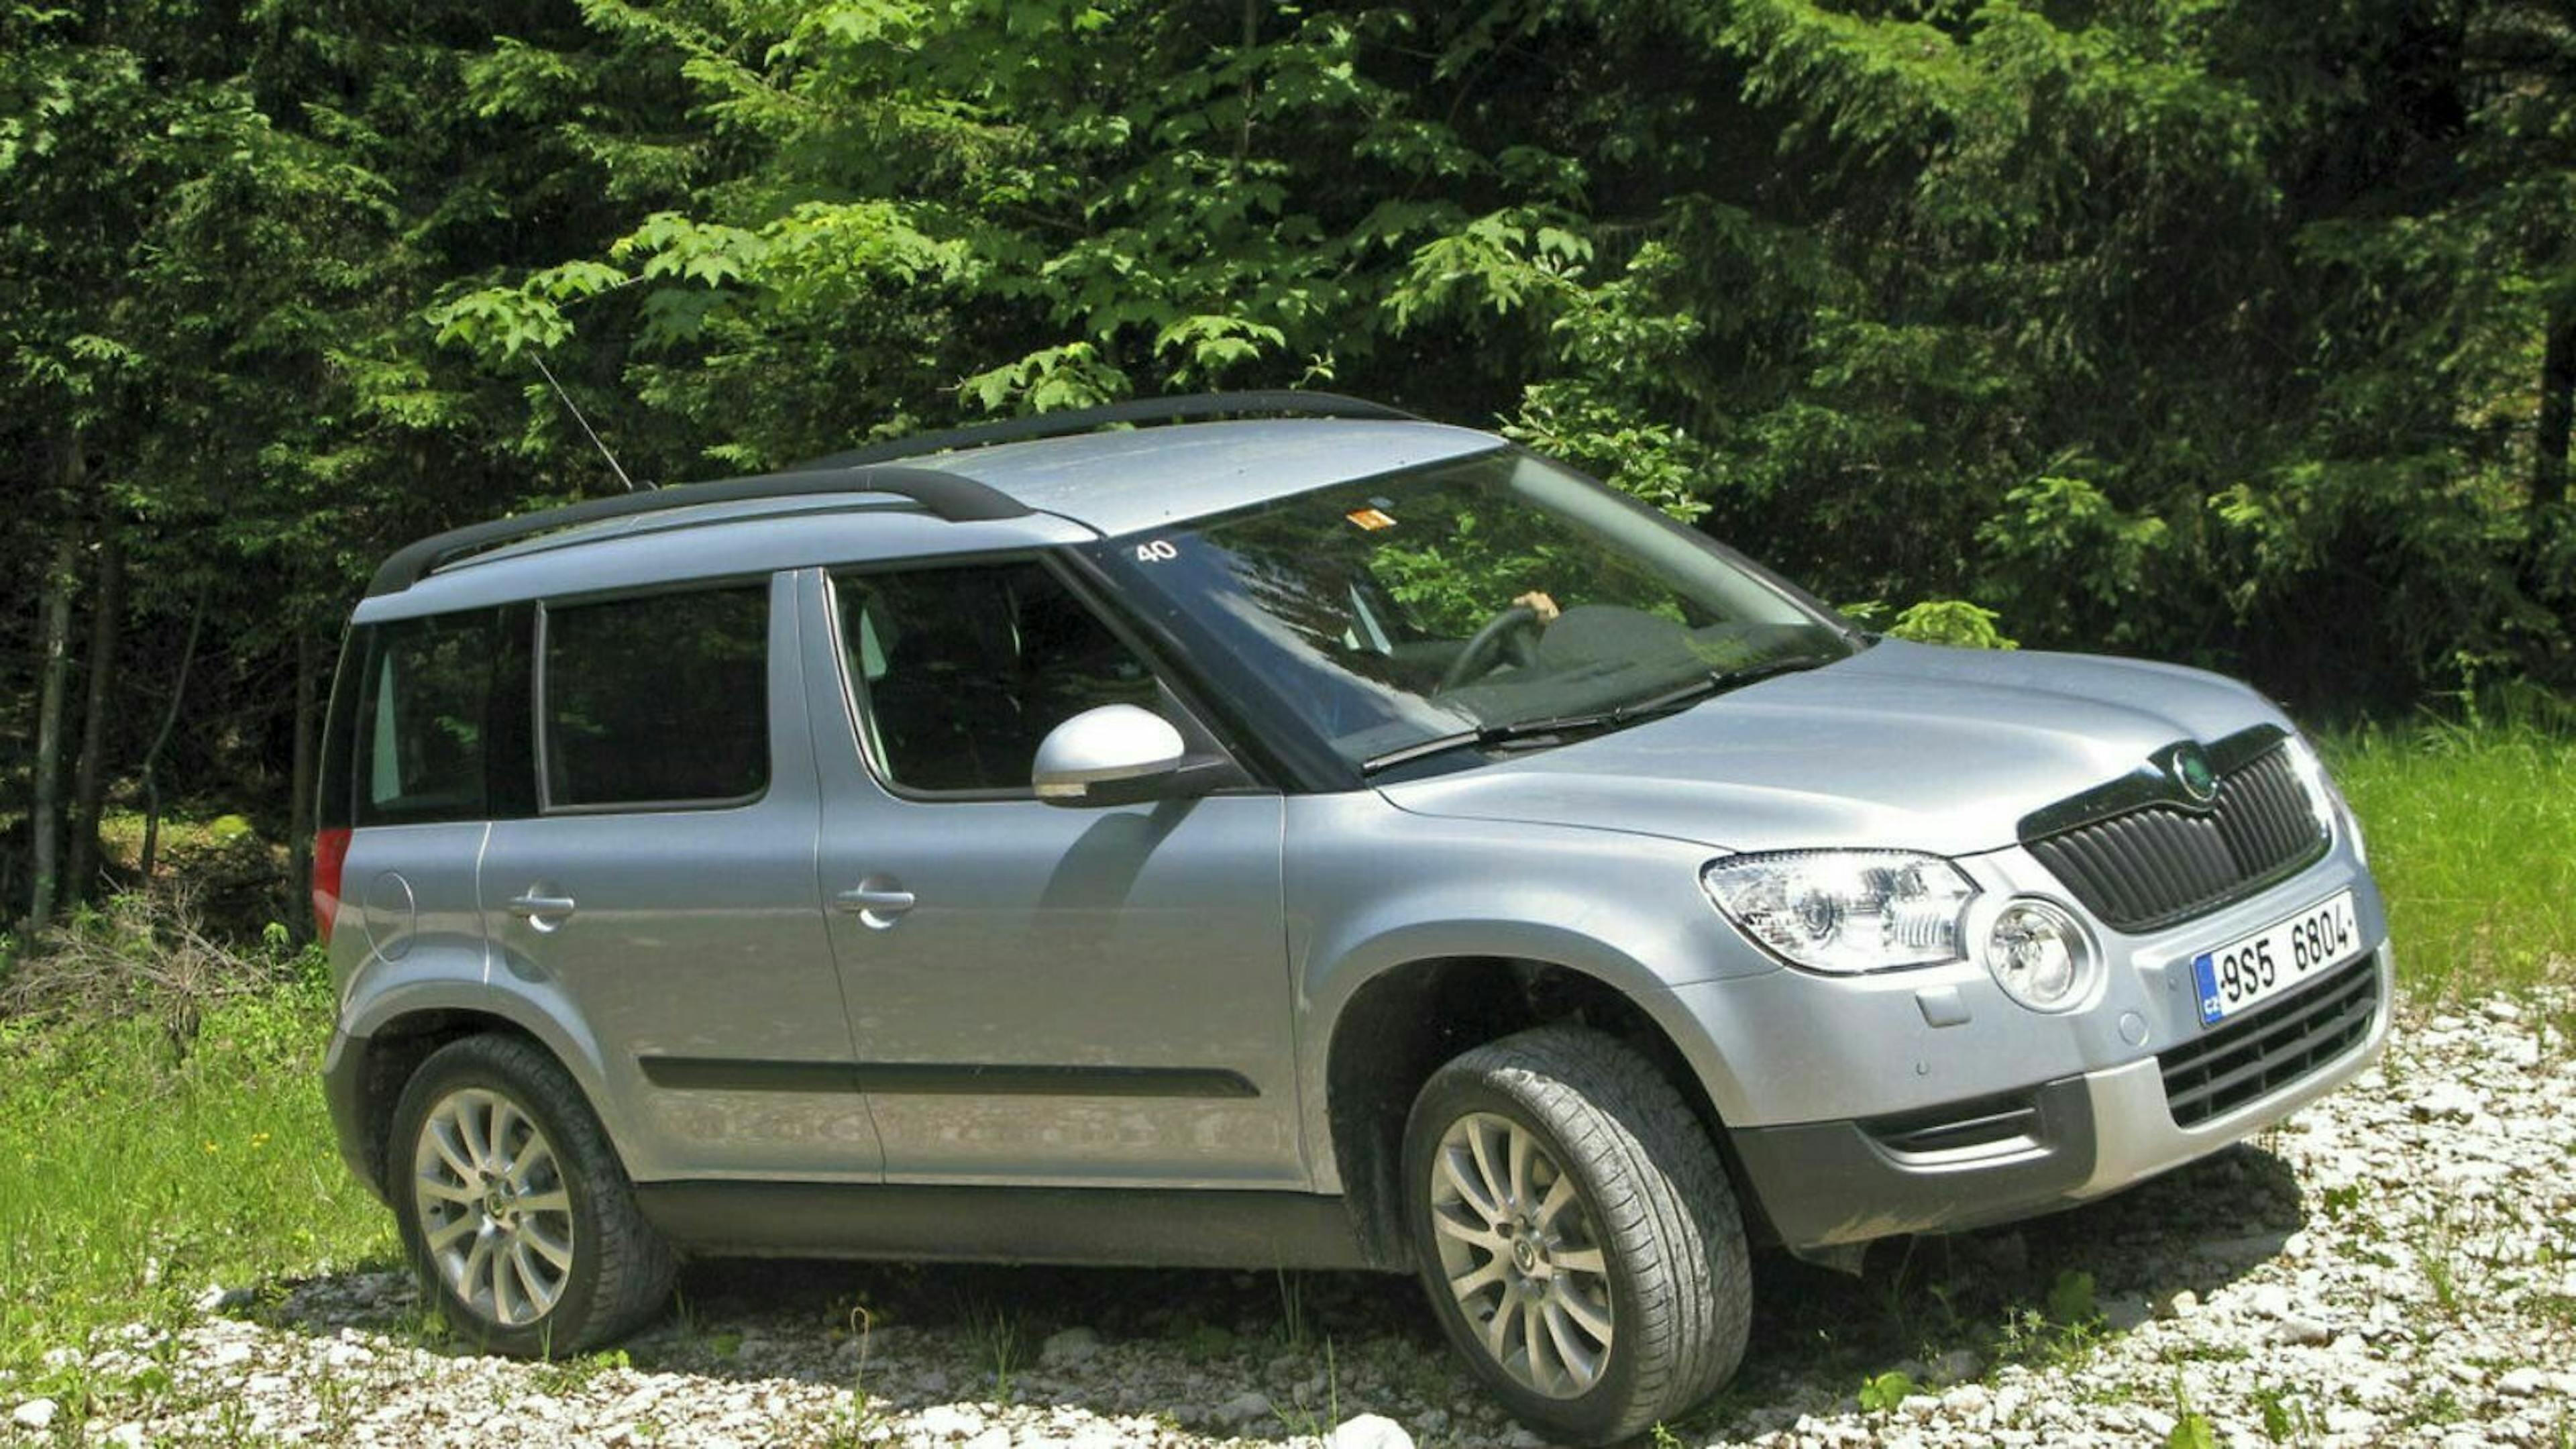 Als eines der ersten Mini-SUVs am Markt, macht der Skoda Yeti auch als Gebrauchtwagen einen soliden Eindruck